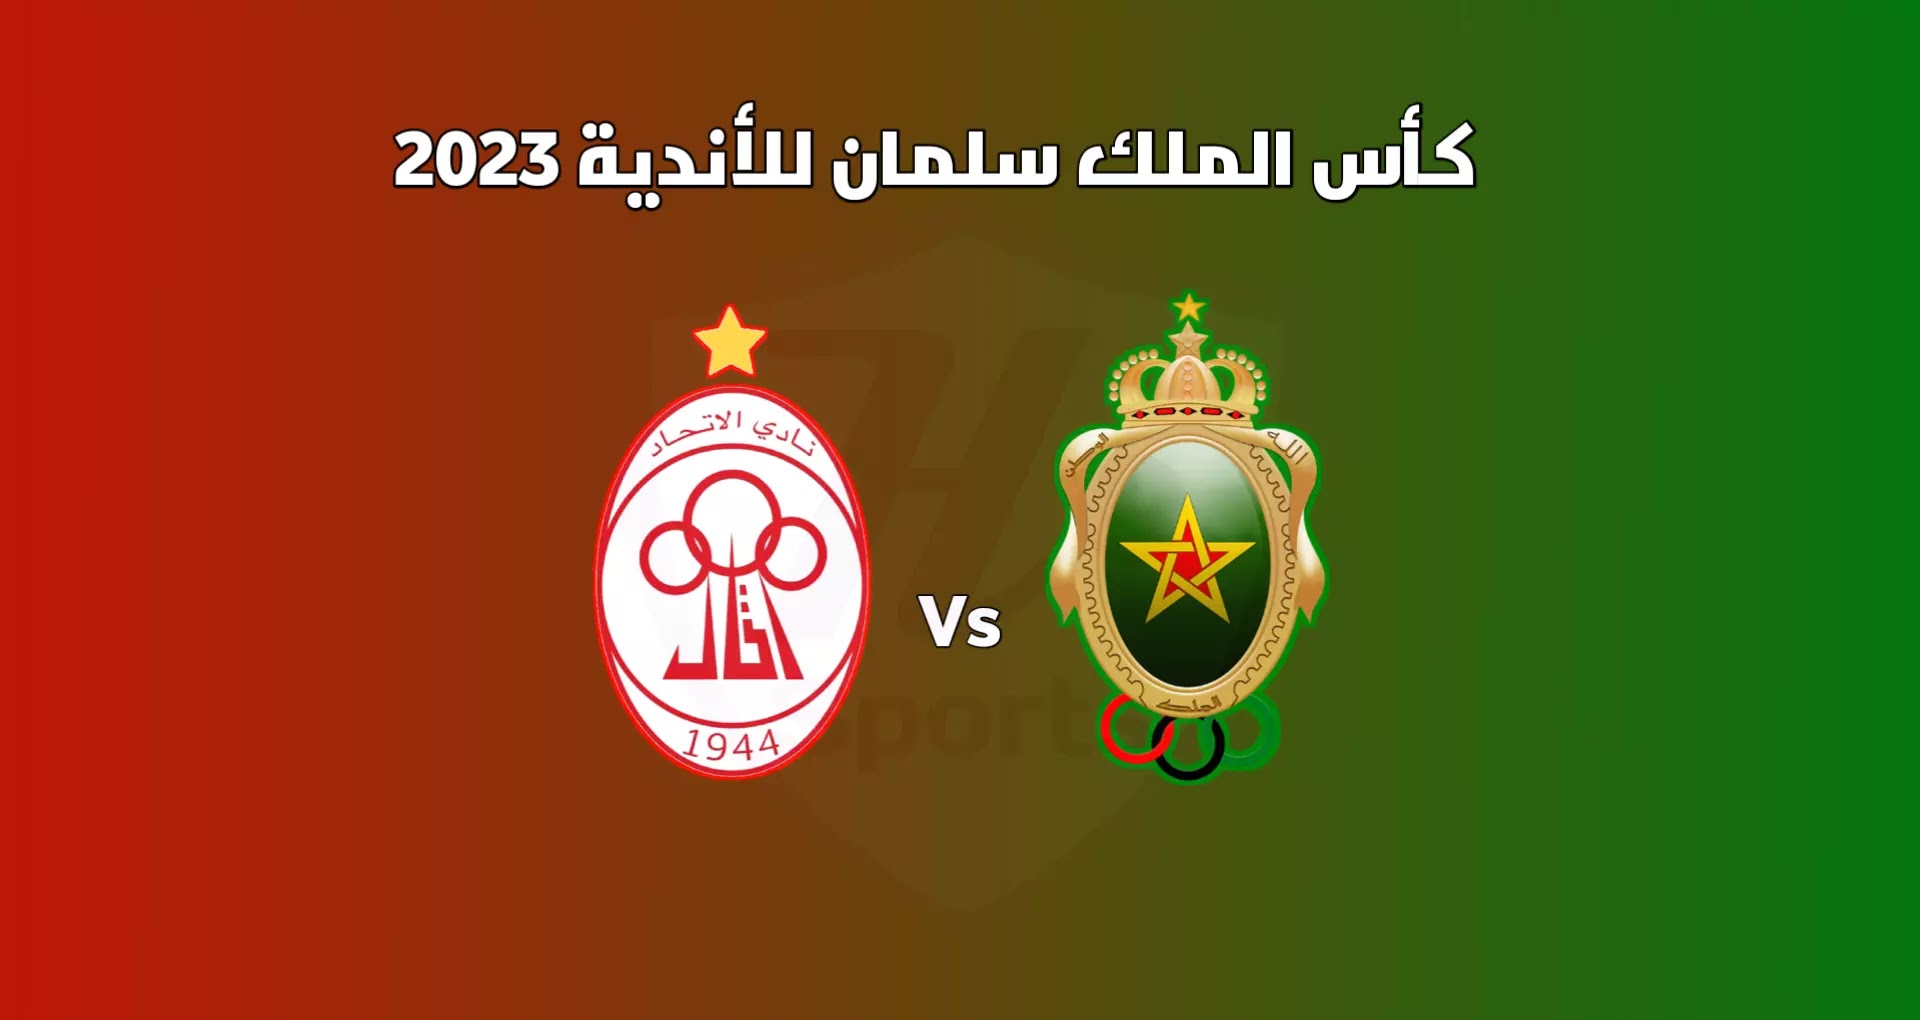 موعد مباراة الجيش الملكي والإتحاد الليبي في كأس سلمان للأندية 2023